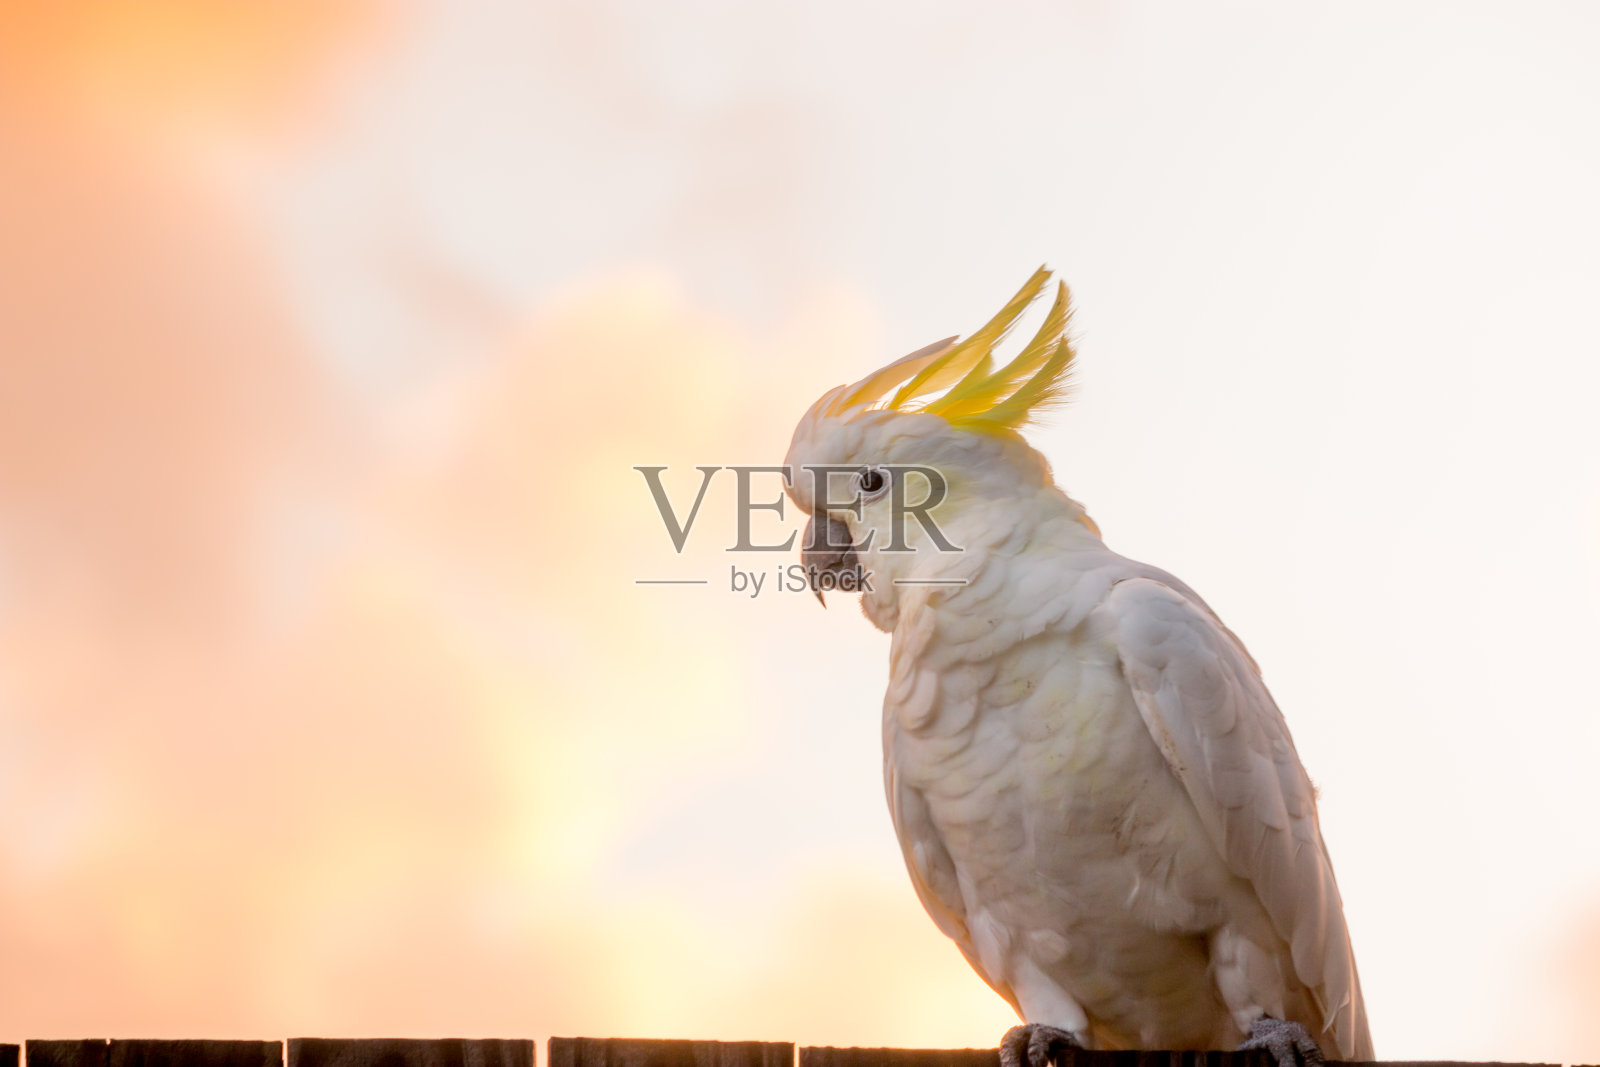 雄性凤头鹦鹉白色鹦鹉栖息在树枝与橙色和粉红色的天空云彩阳光鸟日出美丽的早晨澳大利亚黄金海岸照片摄影图片